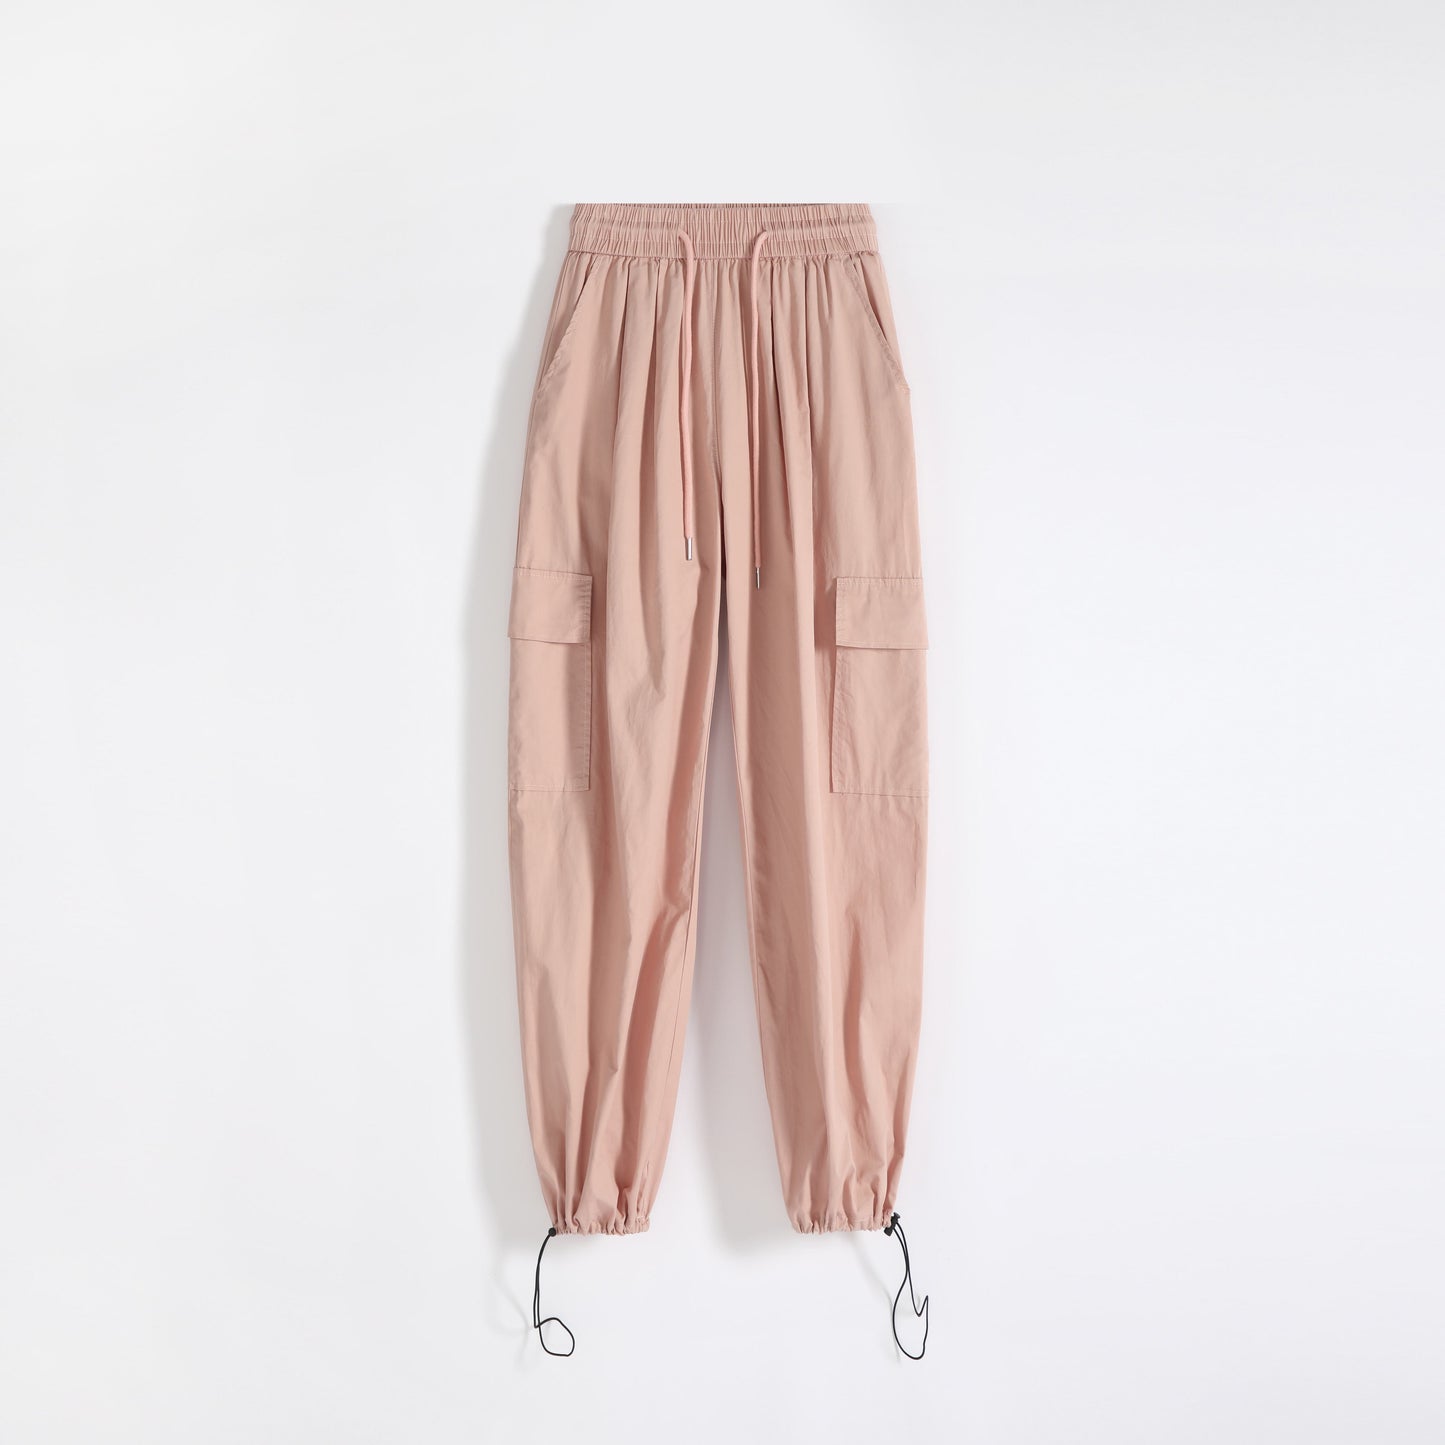 Pantalon taille haute droit à séchage rapide, fin et avec cordon de protection solaire.